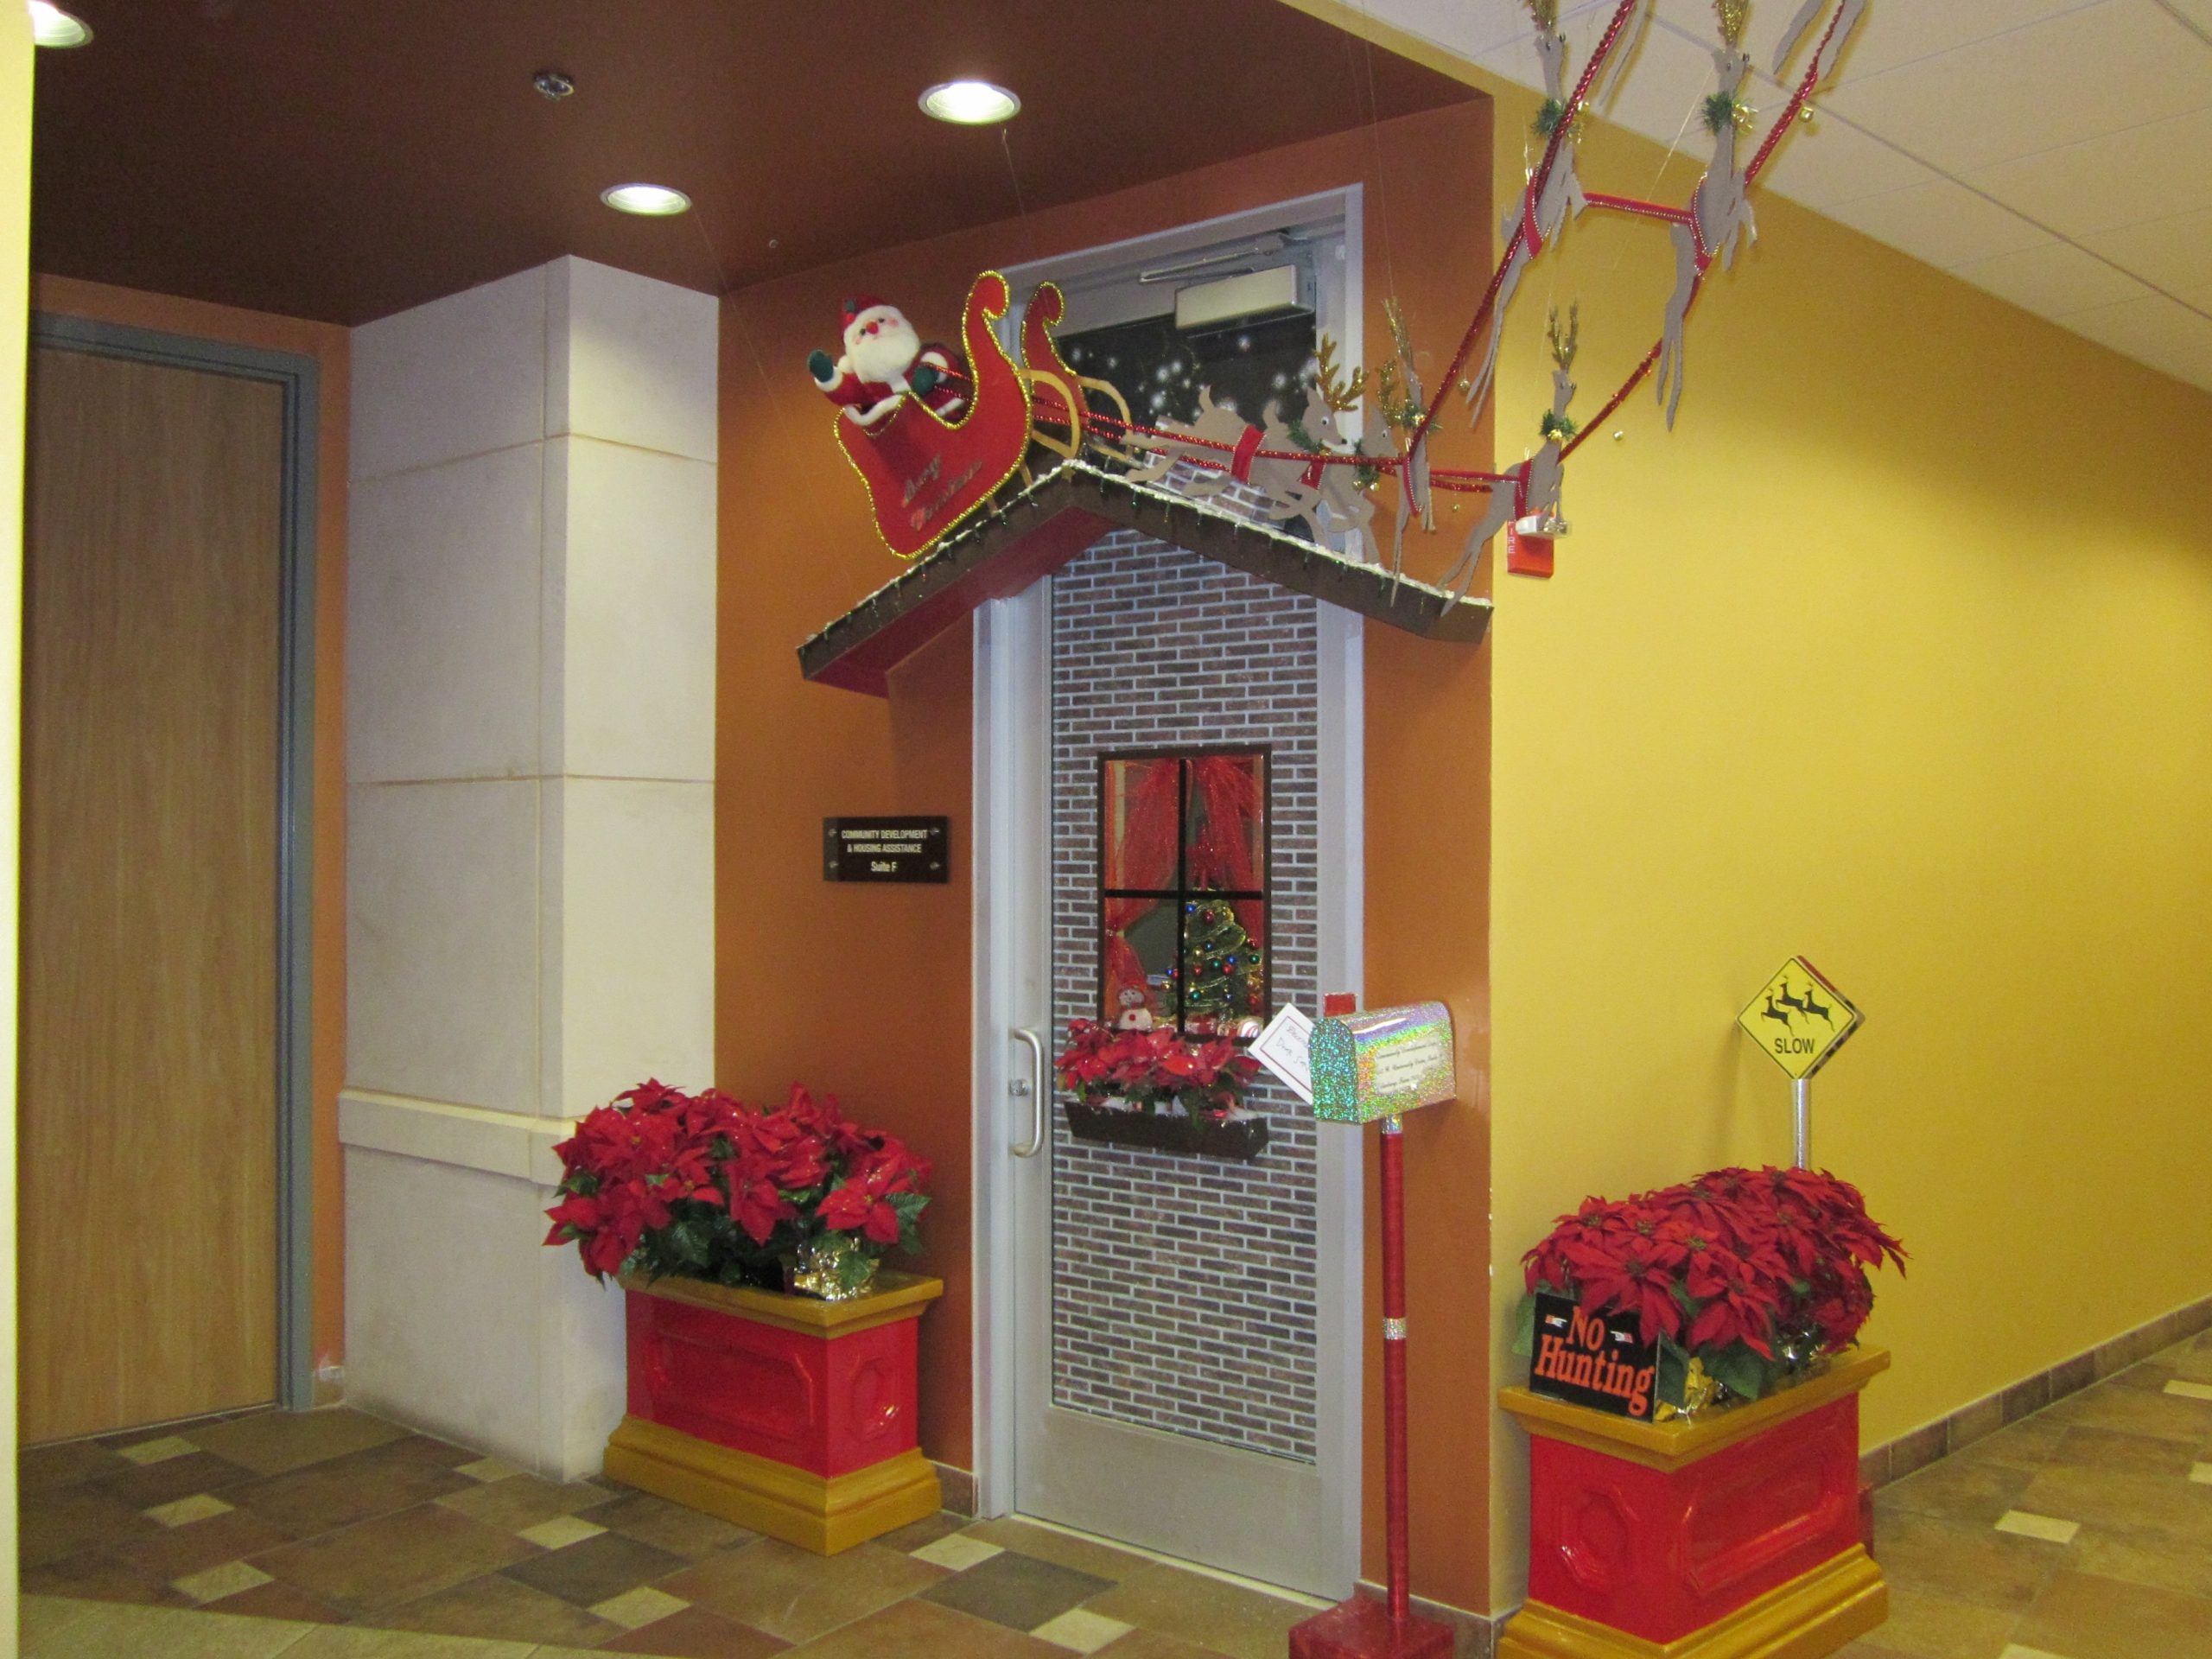 50 Christmas Door Decorations For Work To Help You Ace The Door